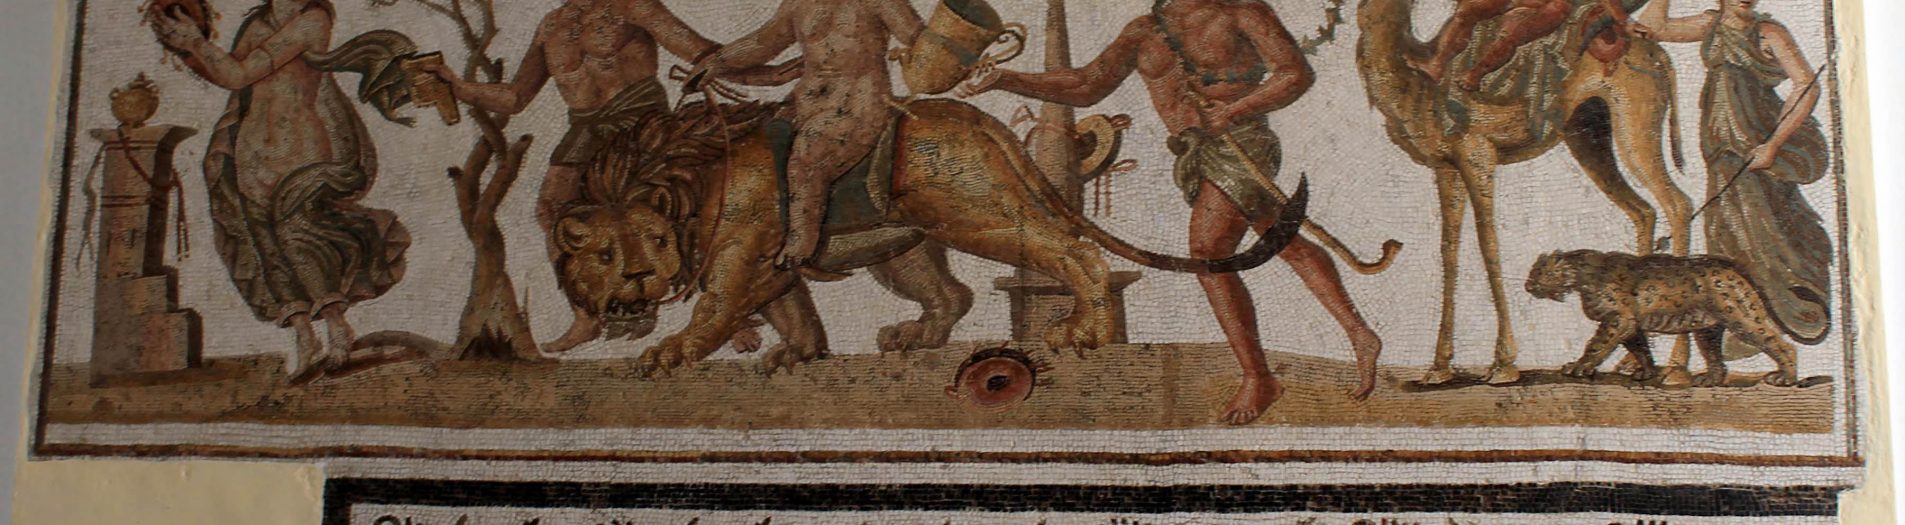 Les sujets dionysiaques dans la mosaïque africaine de la période romaine de la Tunisie